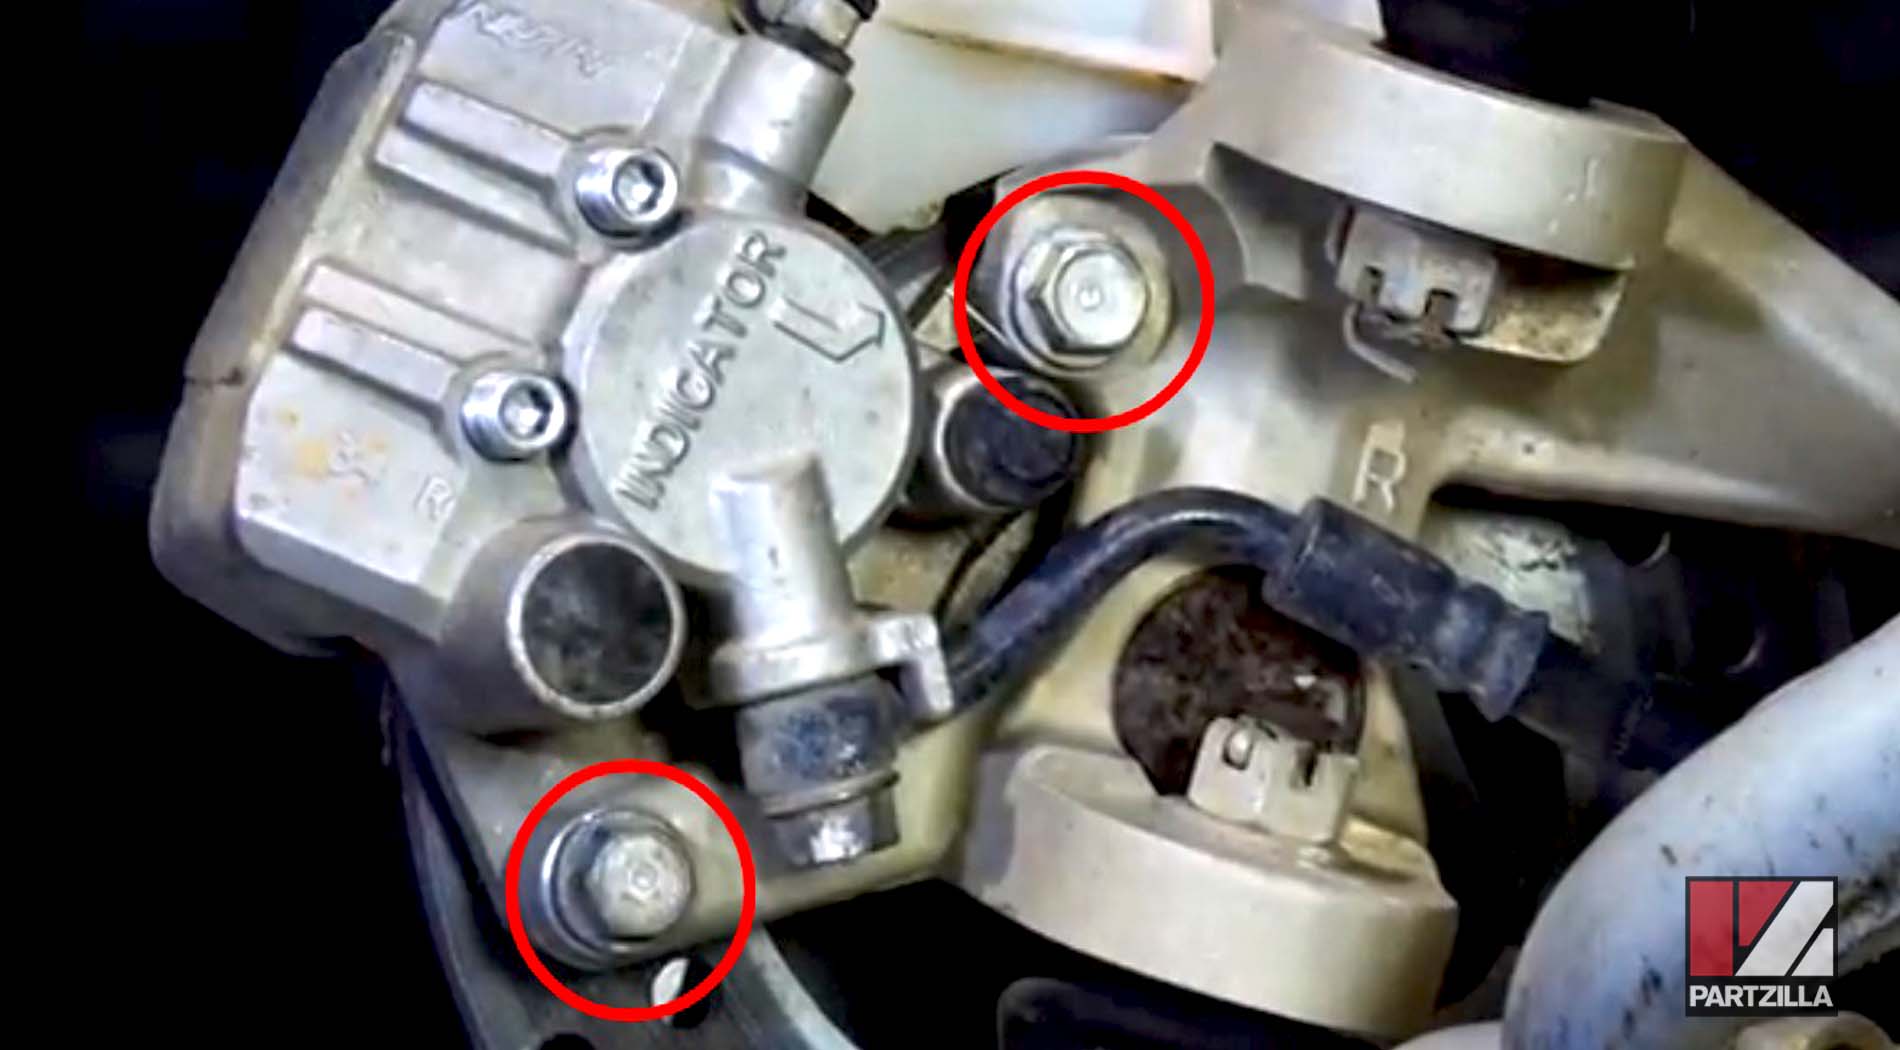 Honda TRX 400 brake caliper removal